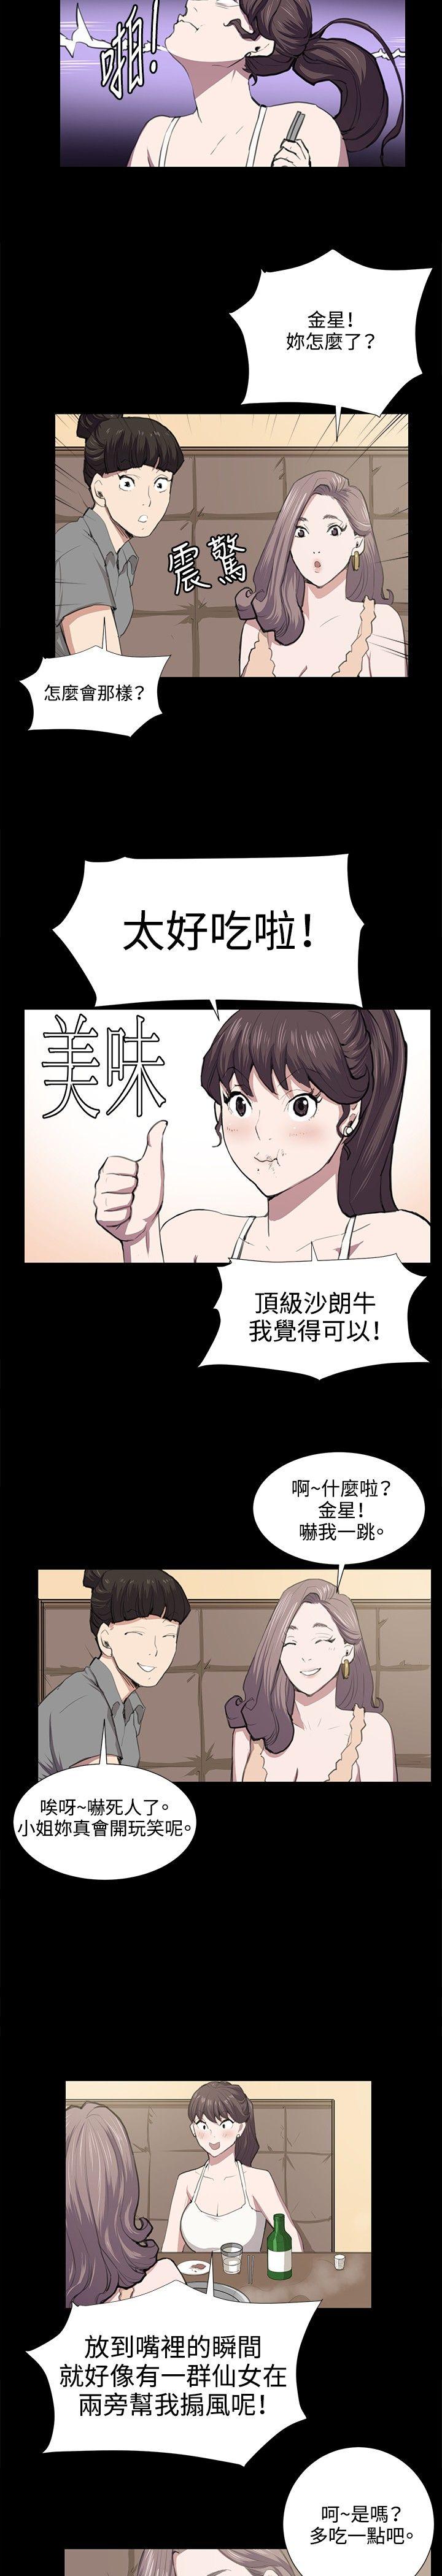 韩国污漫画 深夜便利店 第46话 15